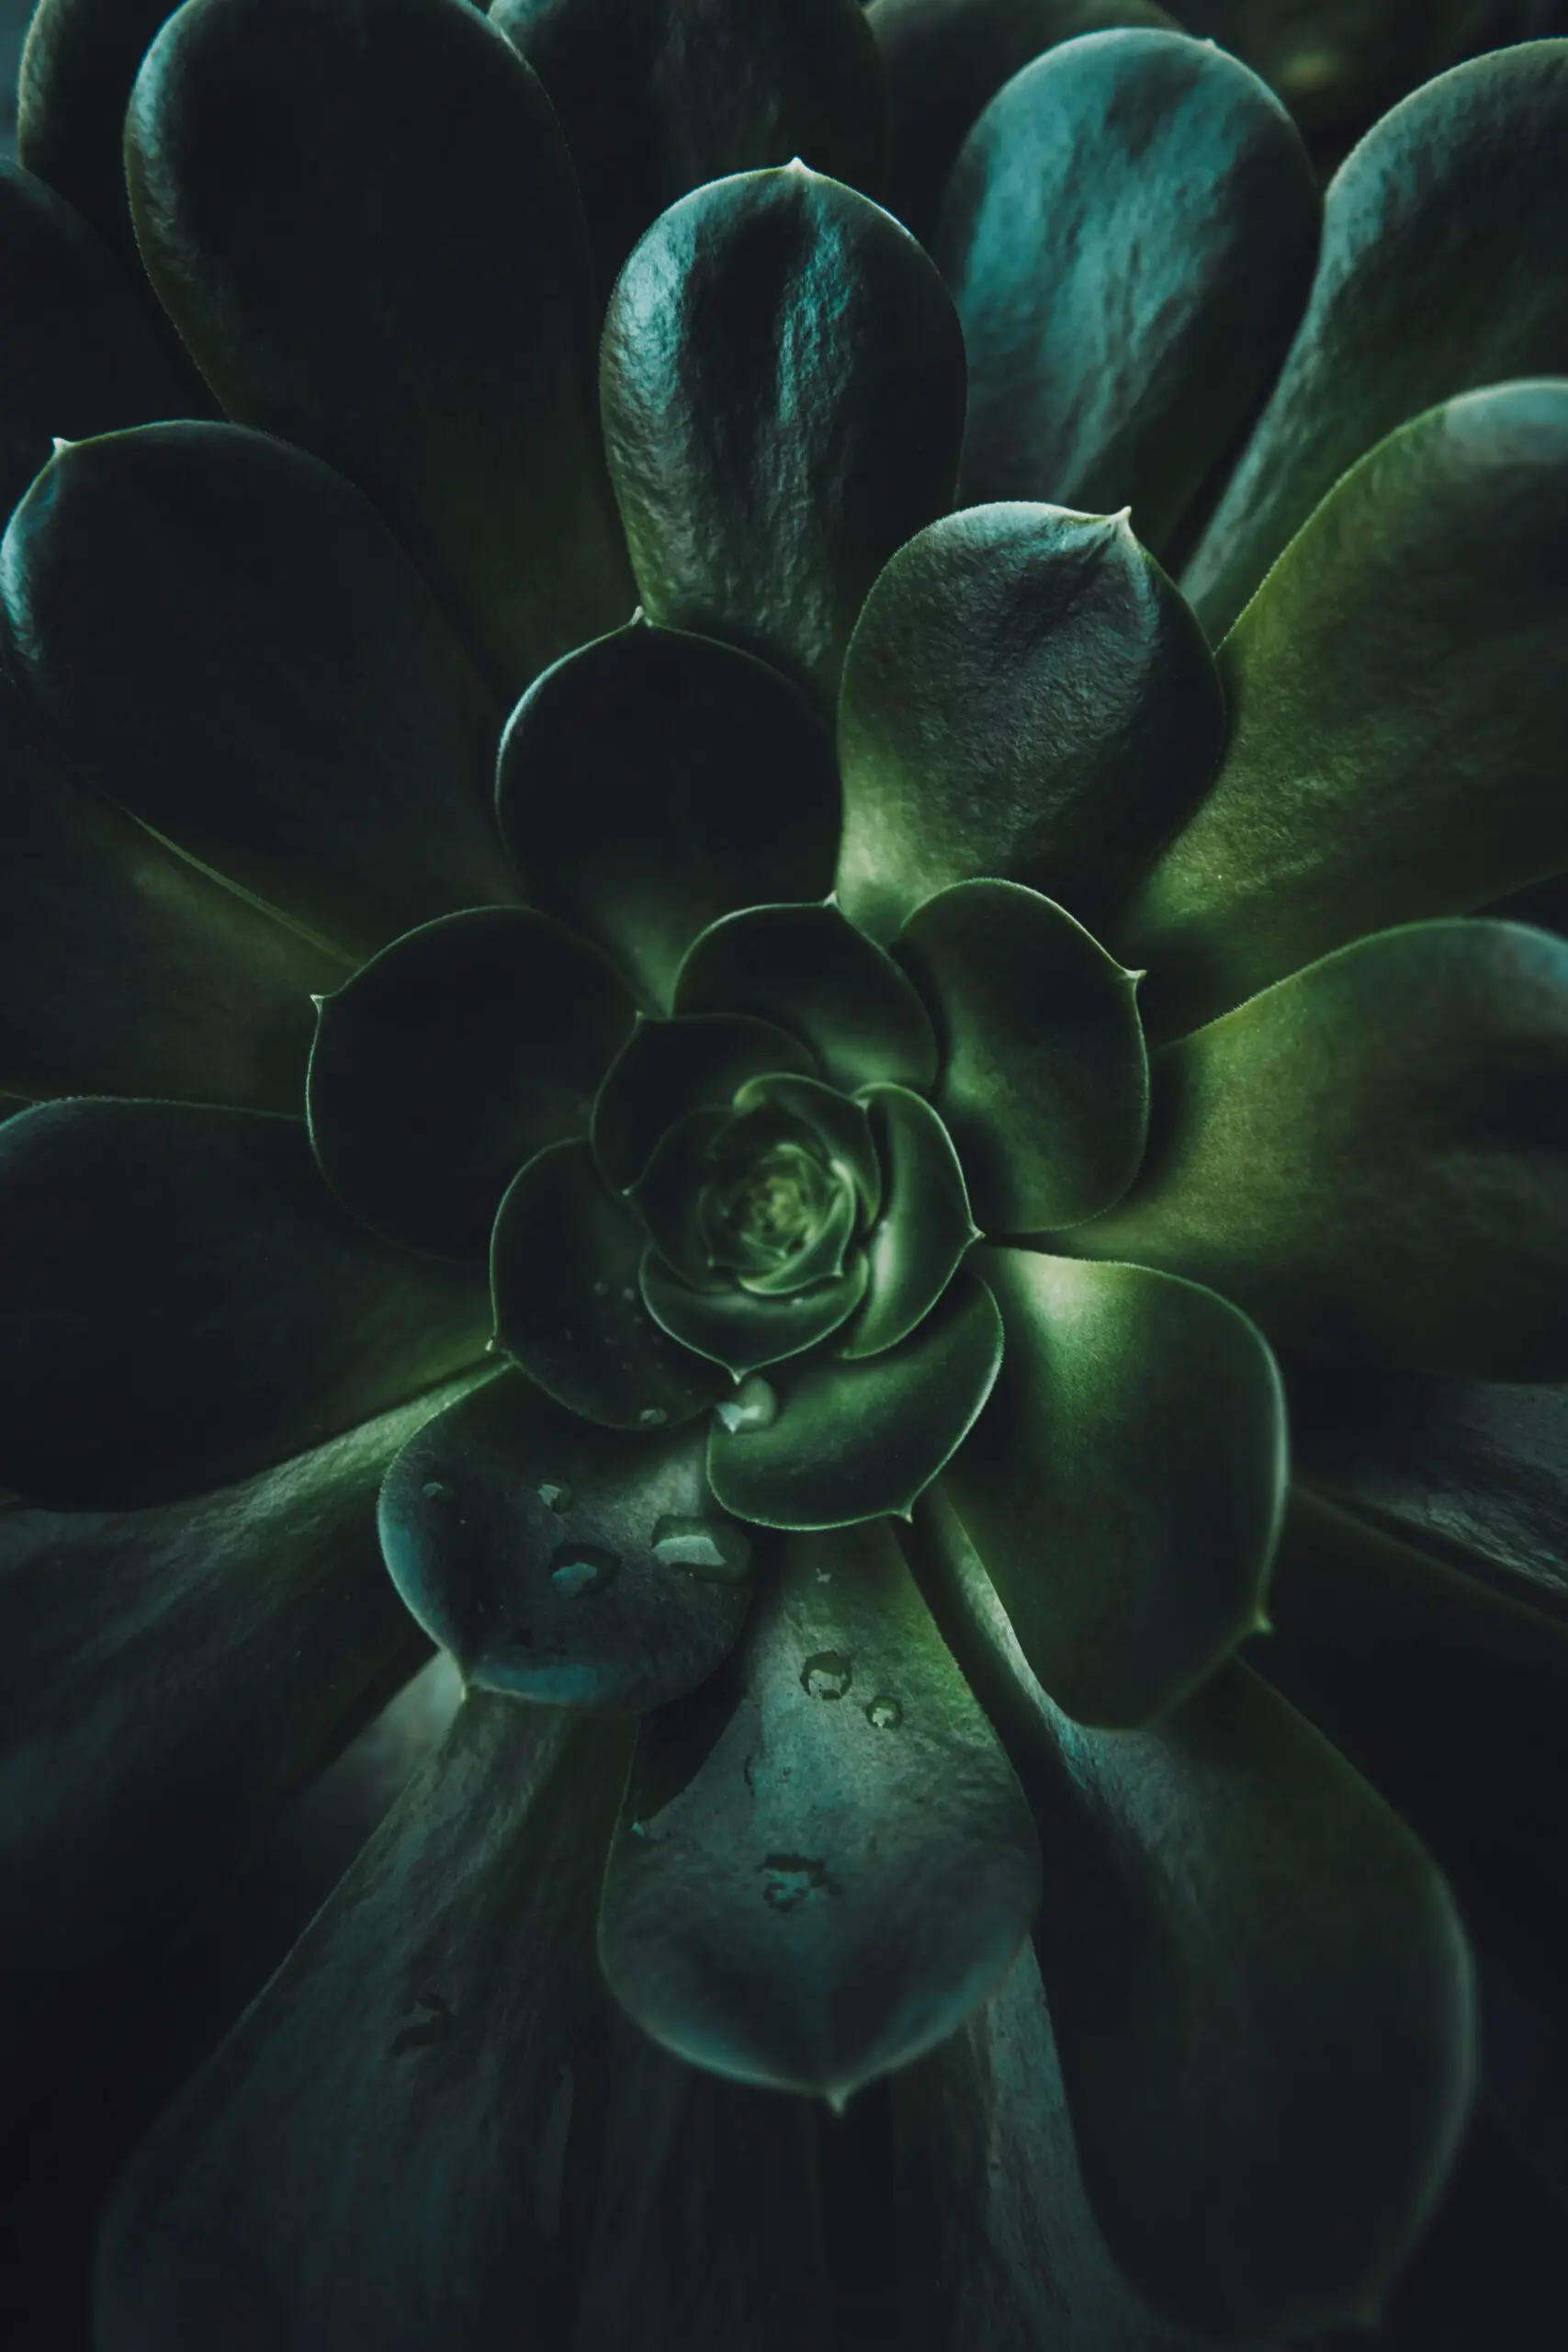 Wandbild (21927) Succulent by Tim Mossholder präsentiert: Natur,Blätter,Makro,Sonstige Pflanzen